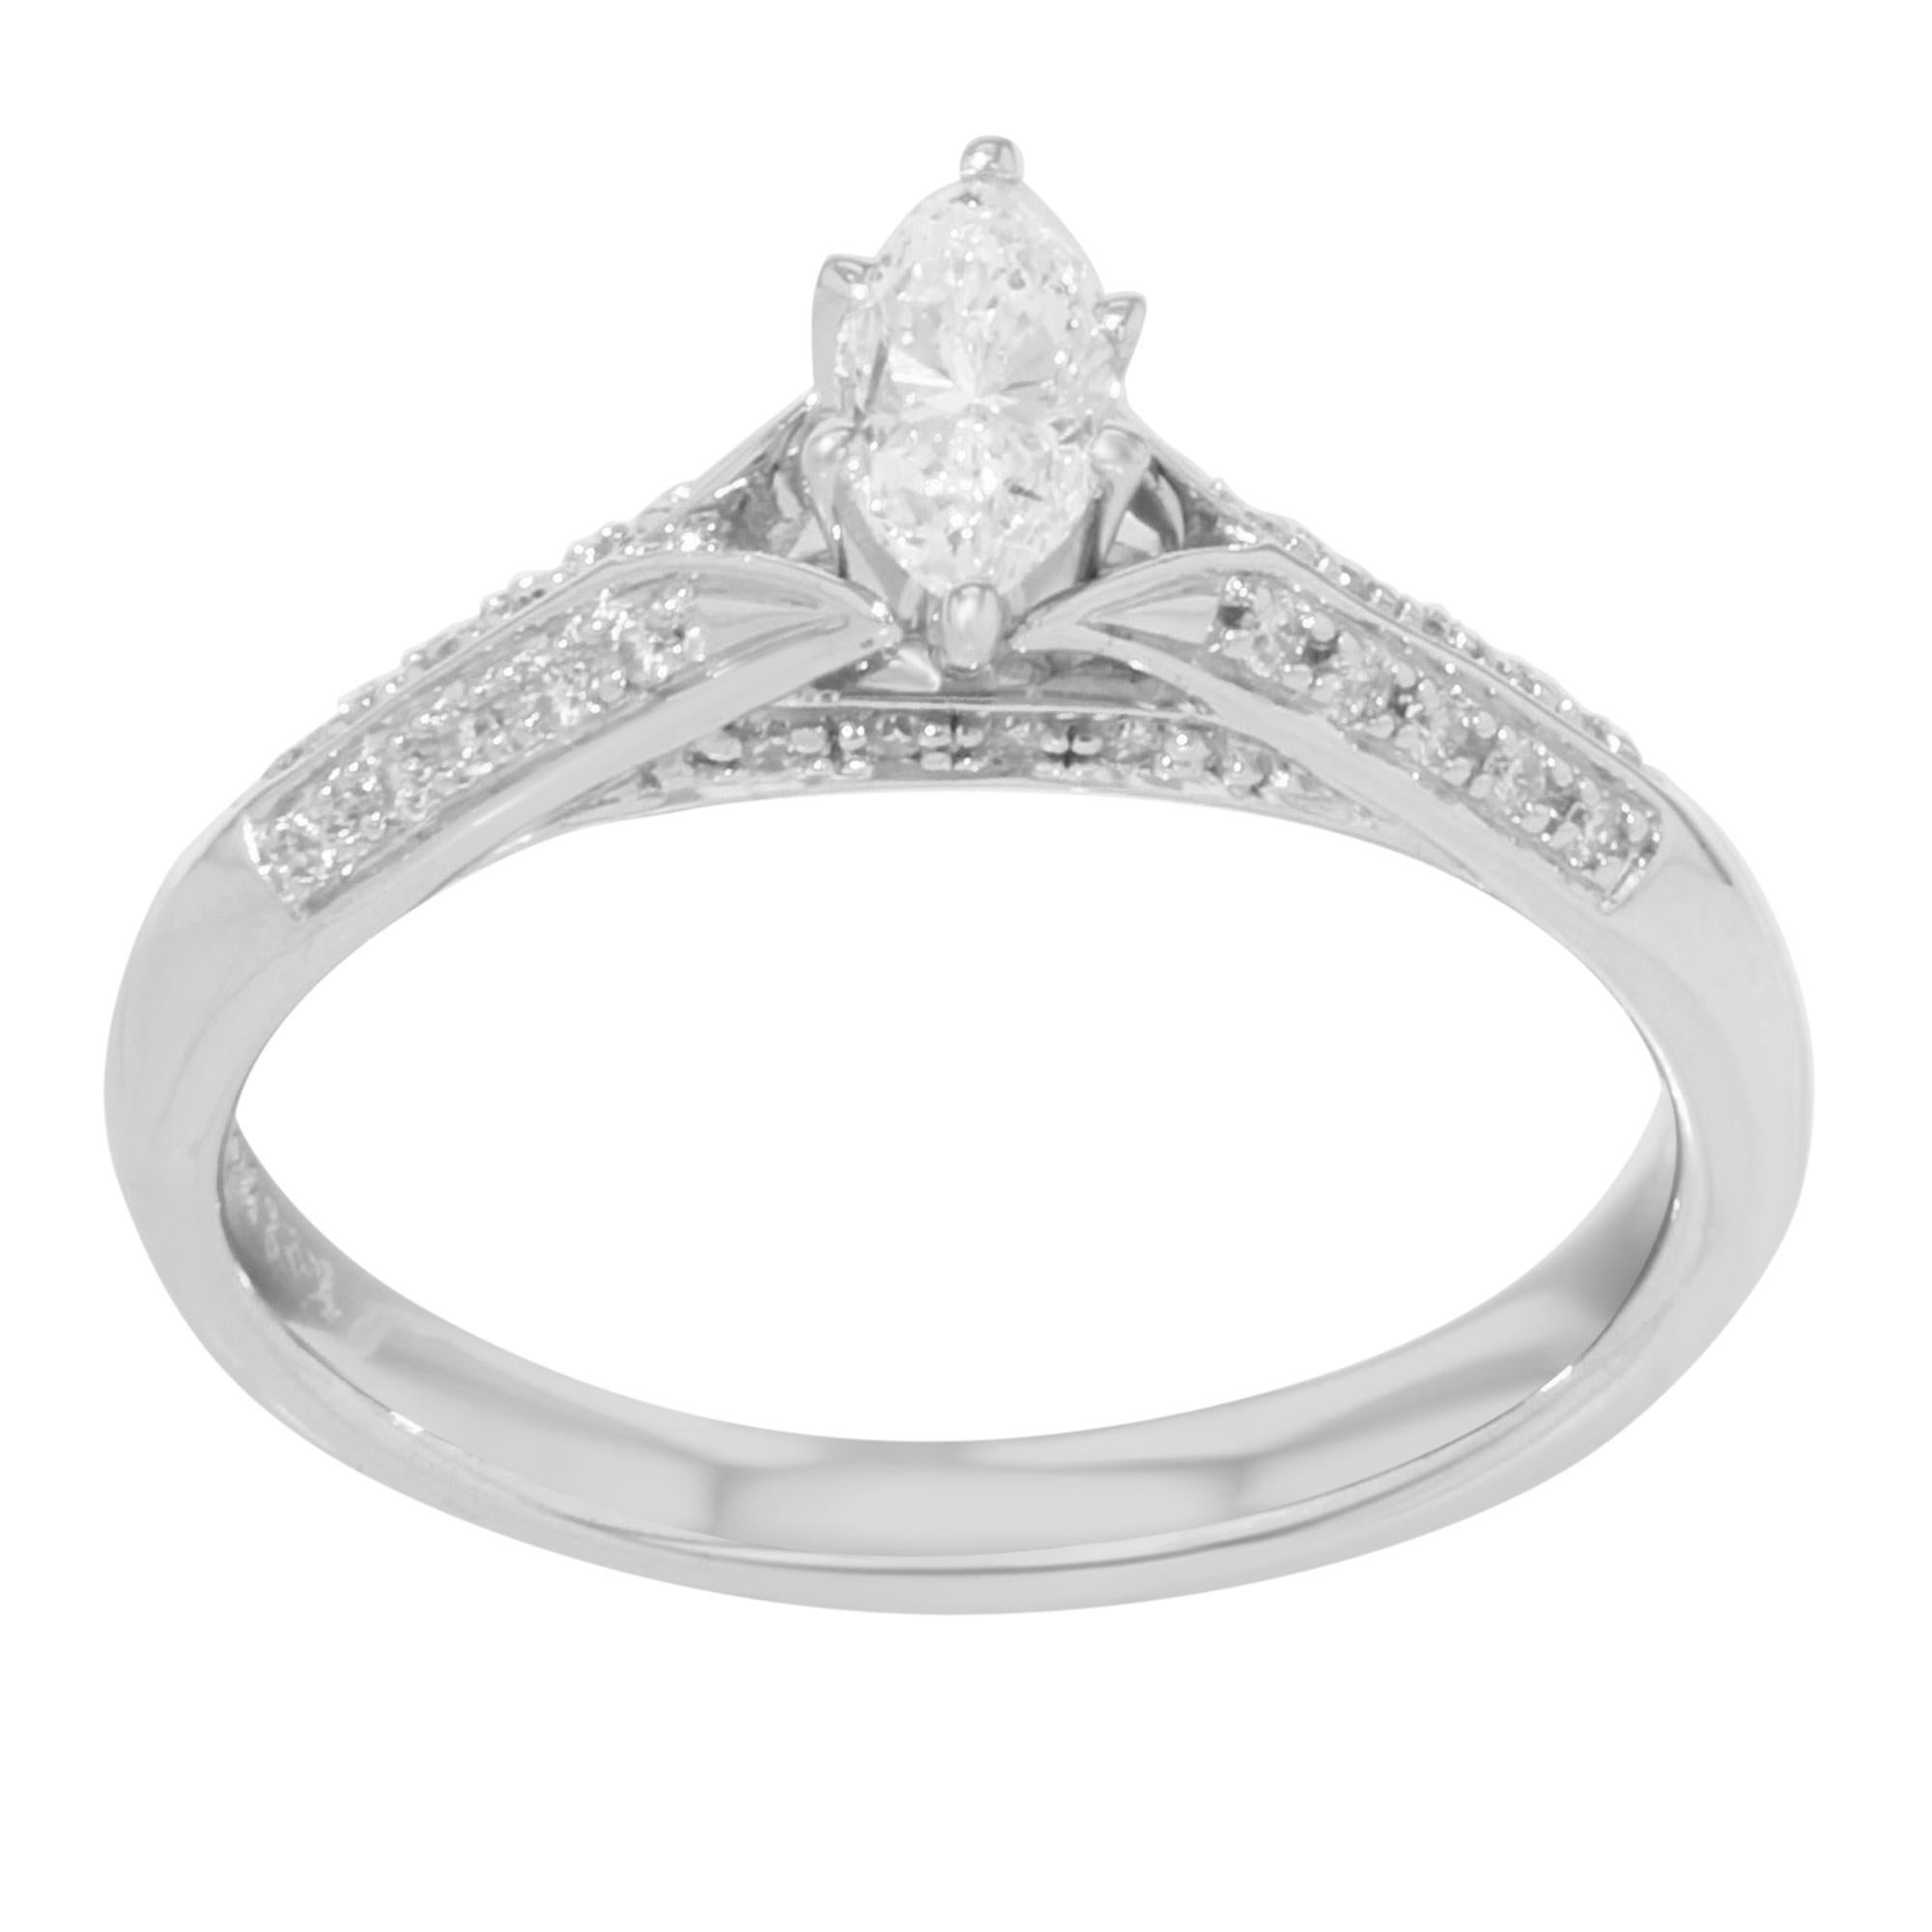 Rachel Koen Diamond Womens Engagement Ring 14K White Gold 0.75Cttw Size 7.25 For Sale